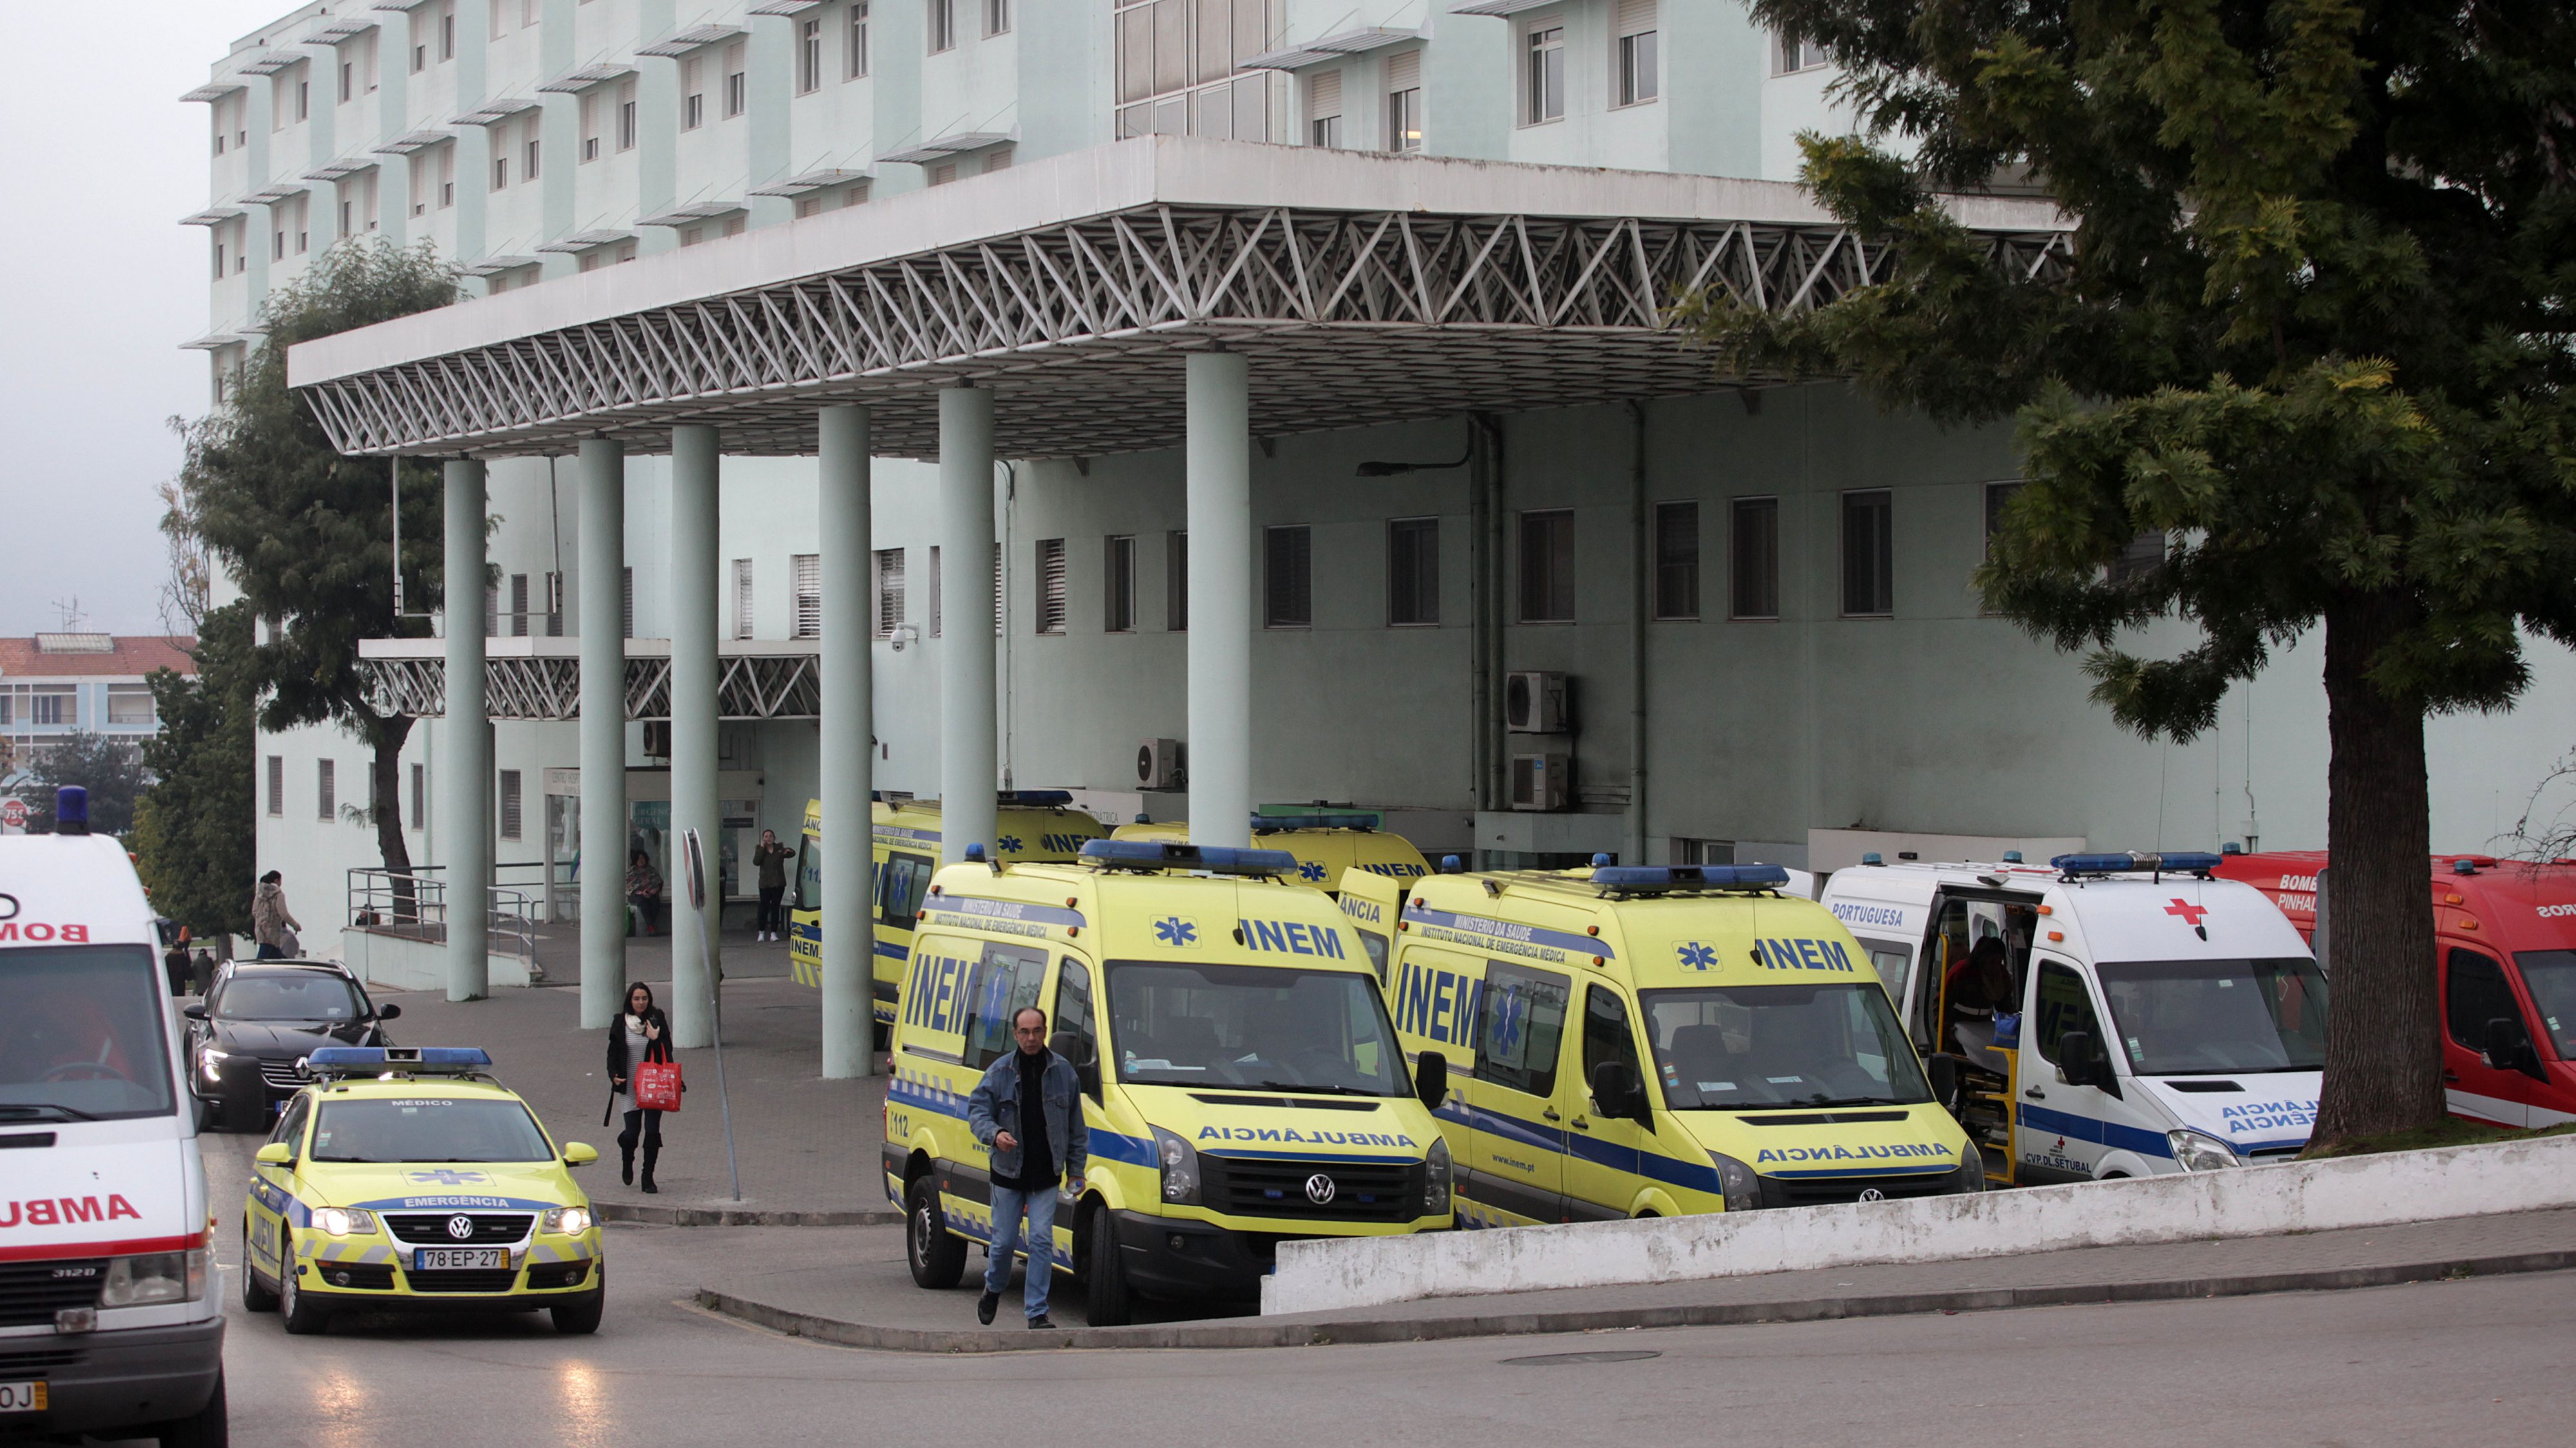 Nos últimos dias, o Serviço de Urgência de Ginecologia/Obstetrícia do Hospital de São Bernardo também registou dificuldades no atendimento de doentes, mas no último domingo aquele serviço já estava a funcionar normalmente